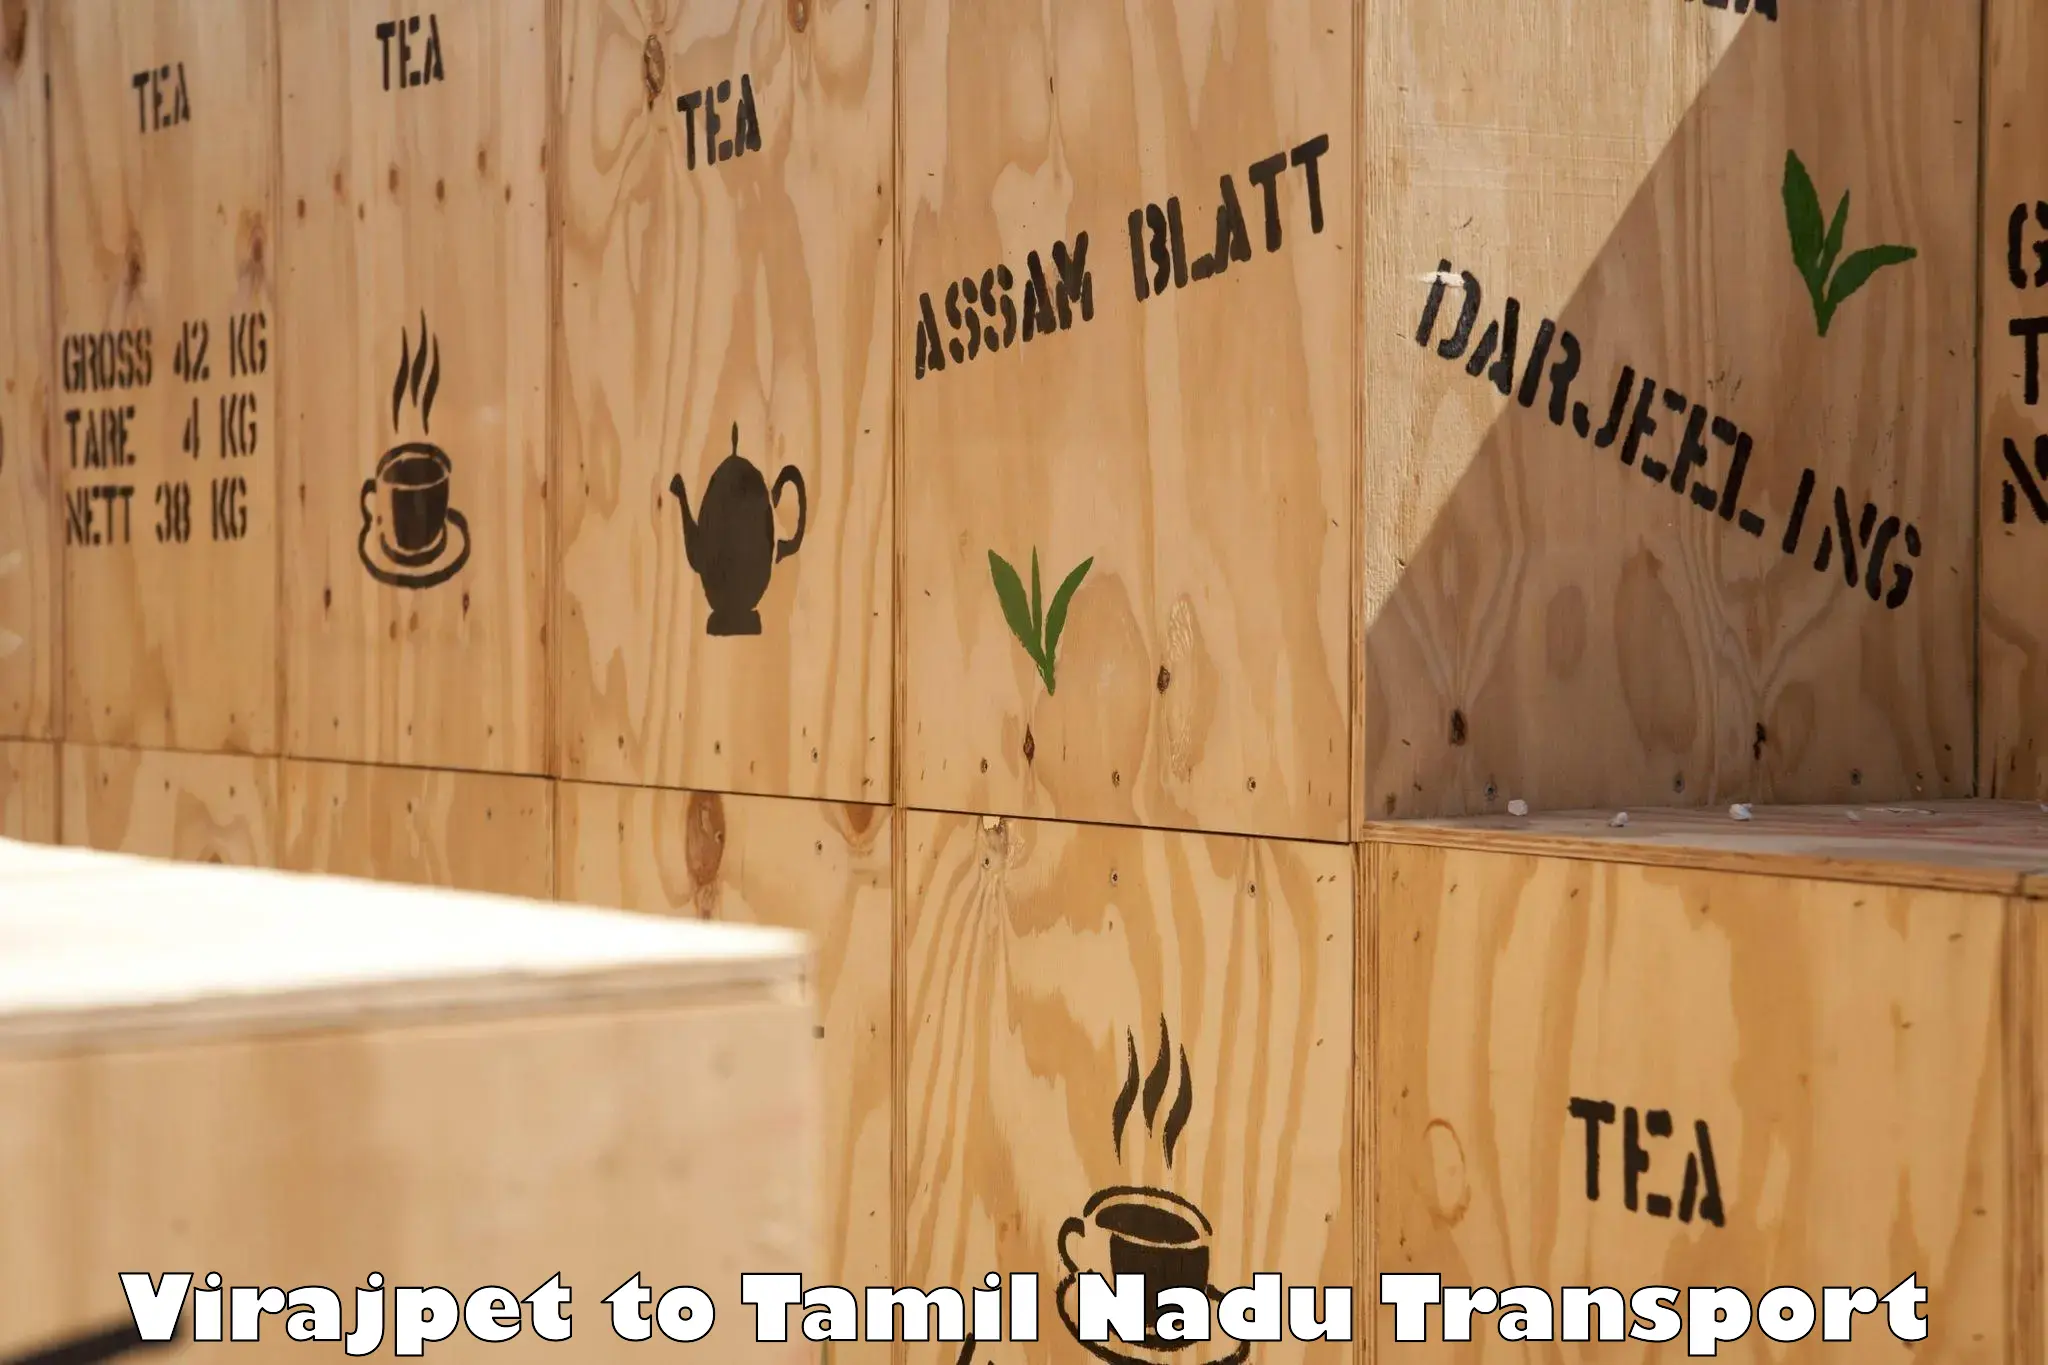 Cargo transportation services Virajpet to Tiruturaipundi